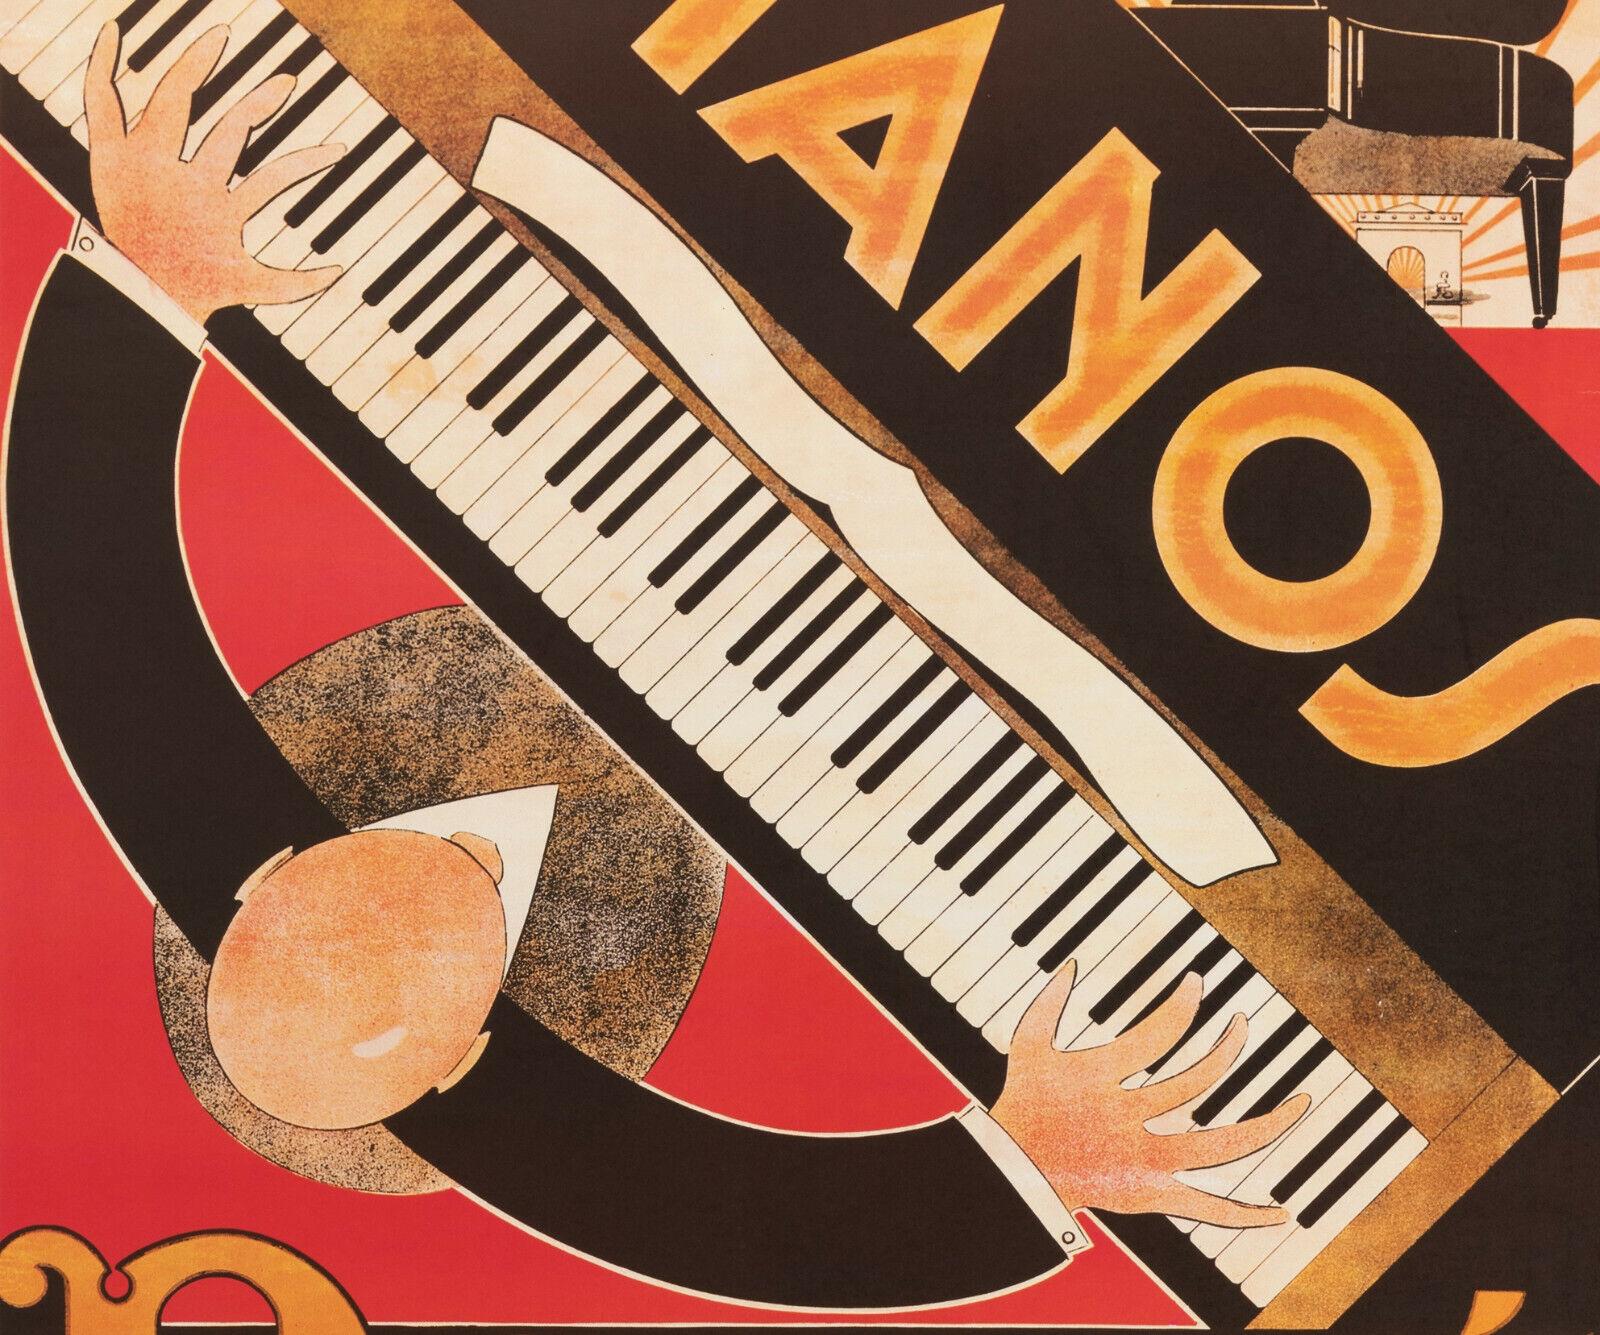 Original Vintage Poster-André Daudé-Piano Daudé-Music-Reissue, c.1980

Affiche pour Pianos Daudé, situé au 75 Avenue de Wagram, 75017 Paris.
Cette affiche est une réimpression modernisée (ajout du numéro de téléphone,.. ) d'une affiche réalisée par